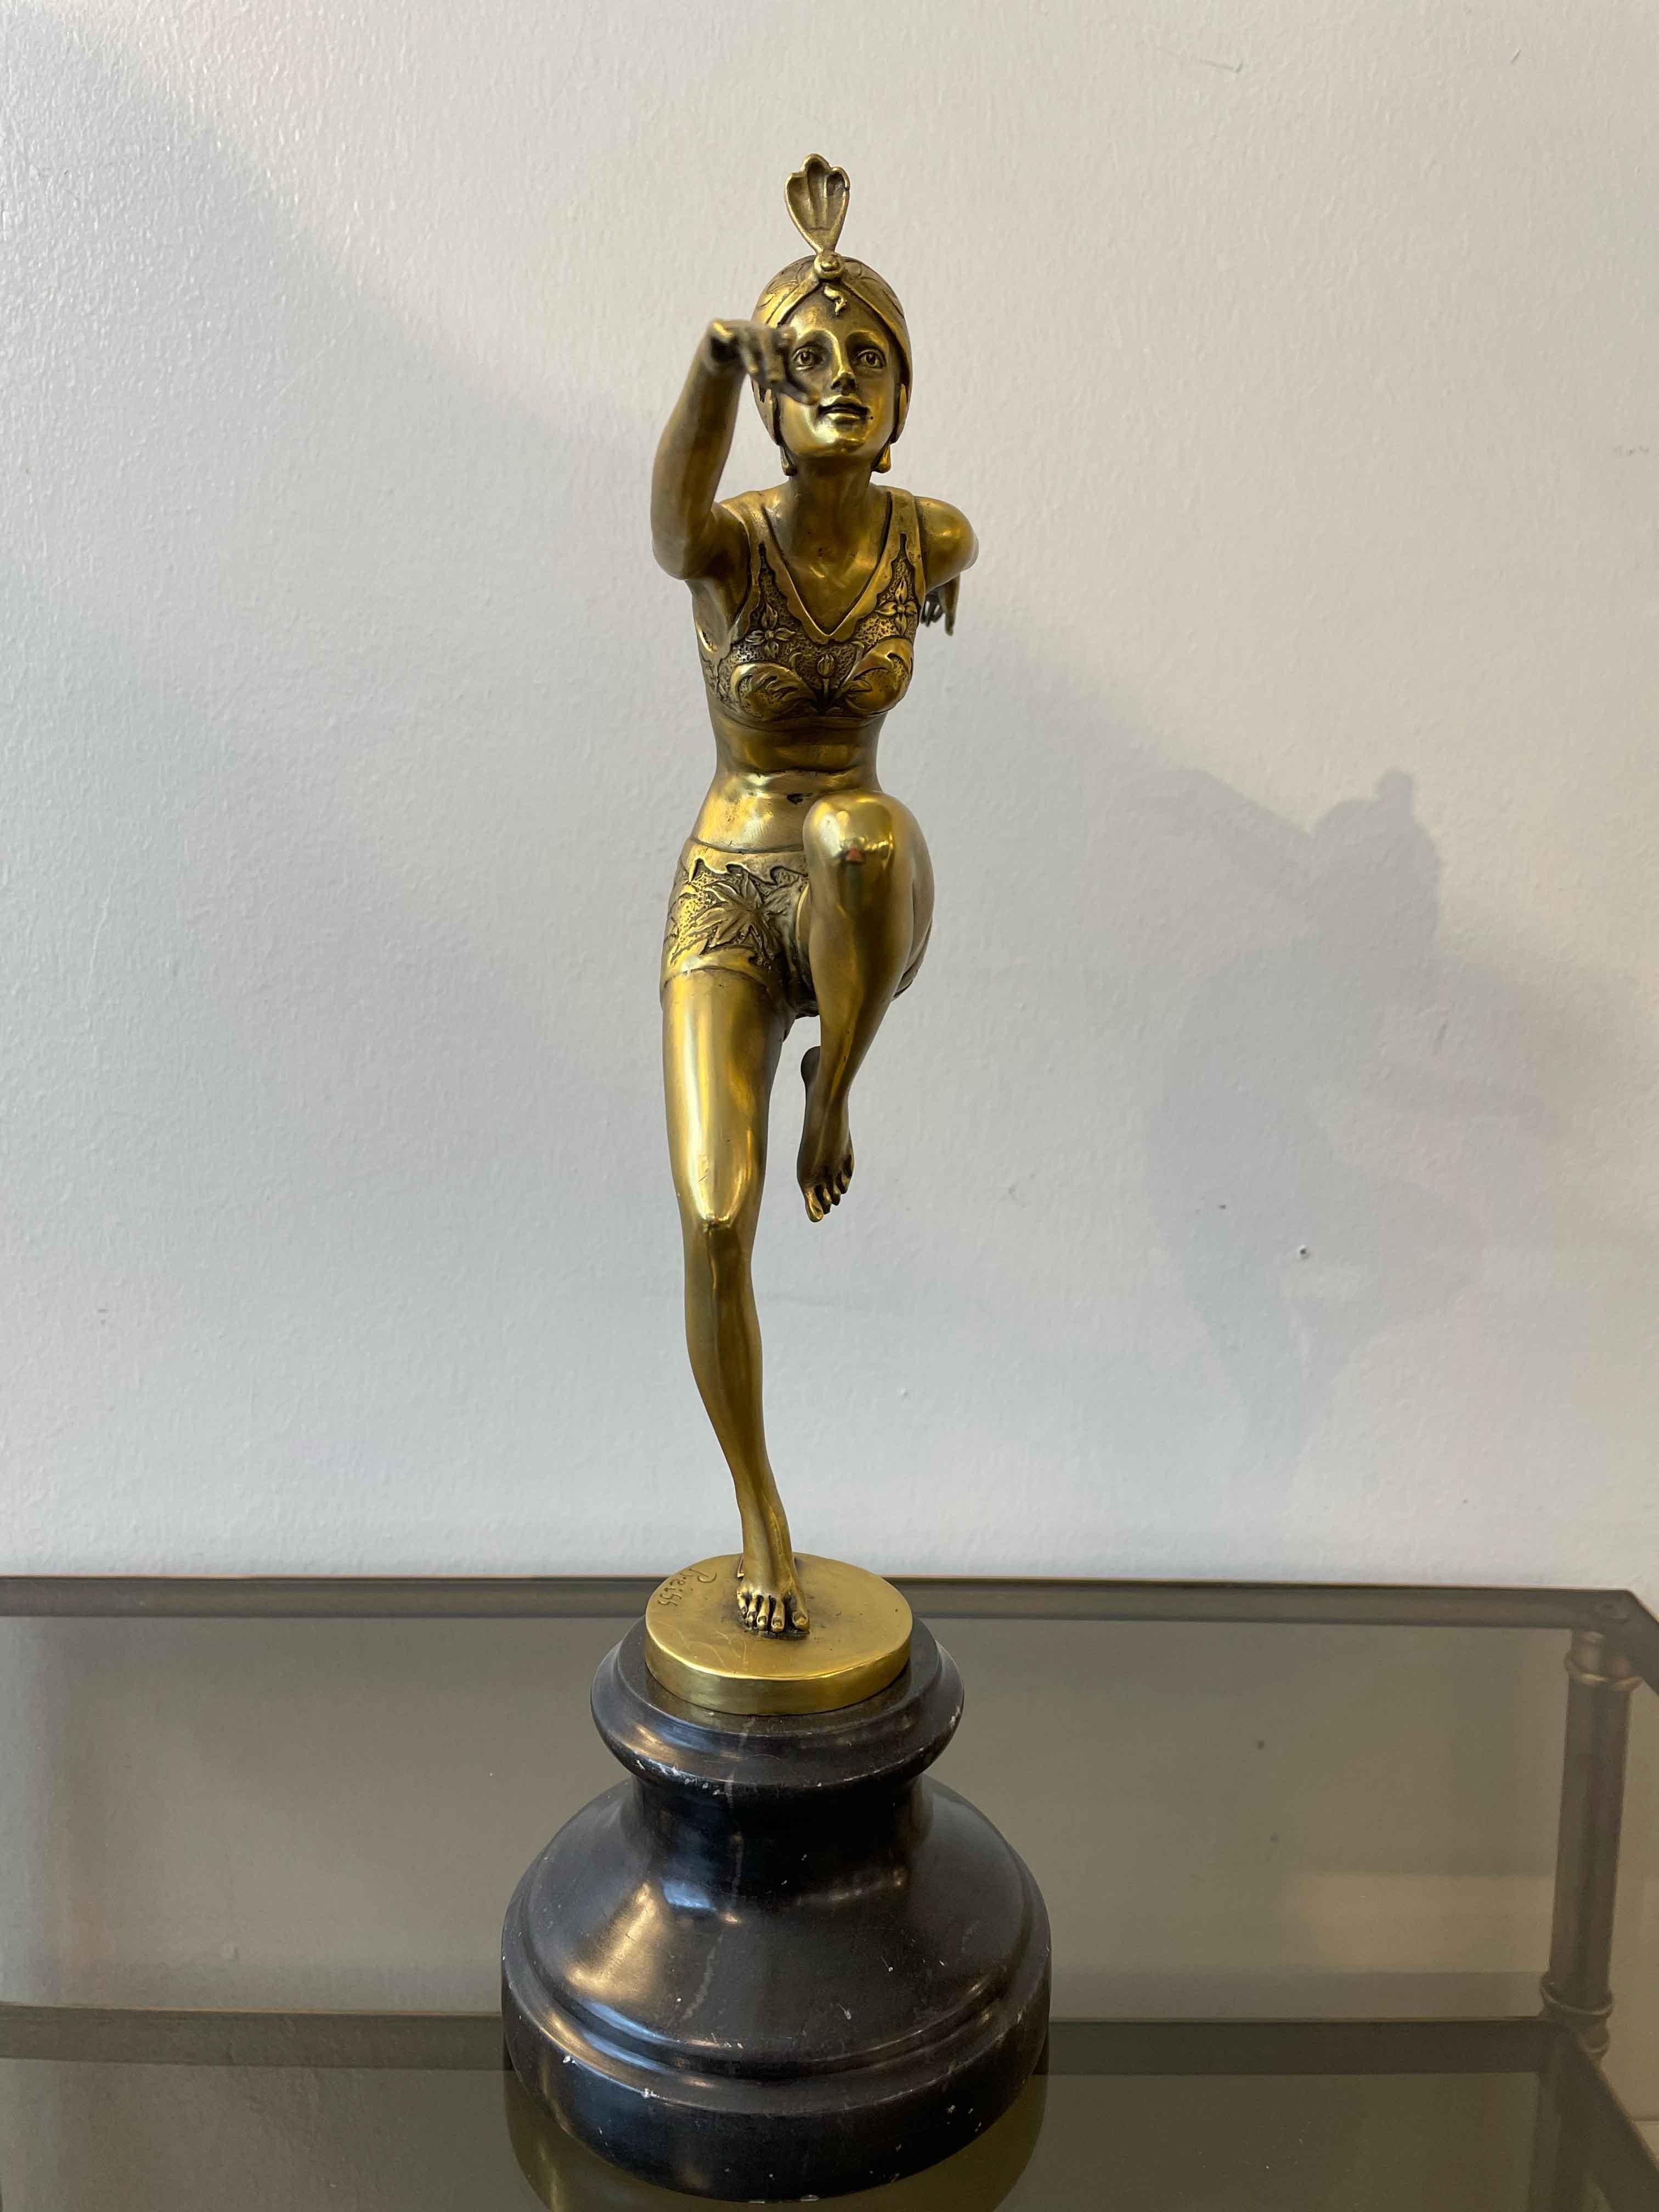 Sculpture Art déco d'une ballerine en bronze doré par Preiss.

La sculpture présente de nombreux détails sur l'ensemble de la figure.

Dimensions : H 38 cm - base diam. 12 cm